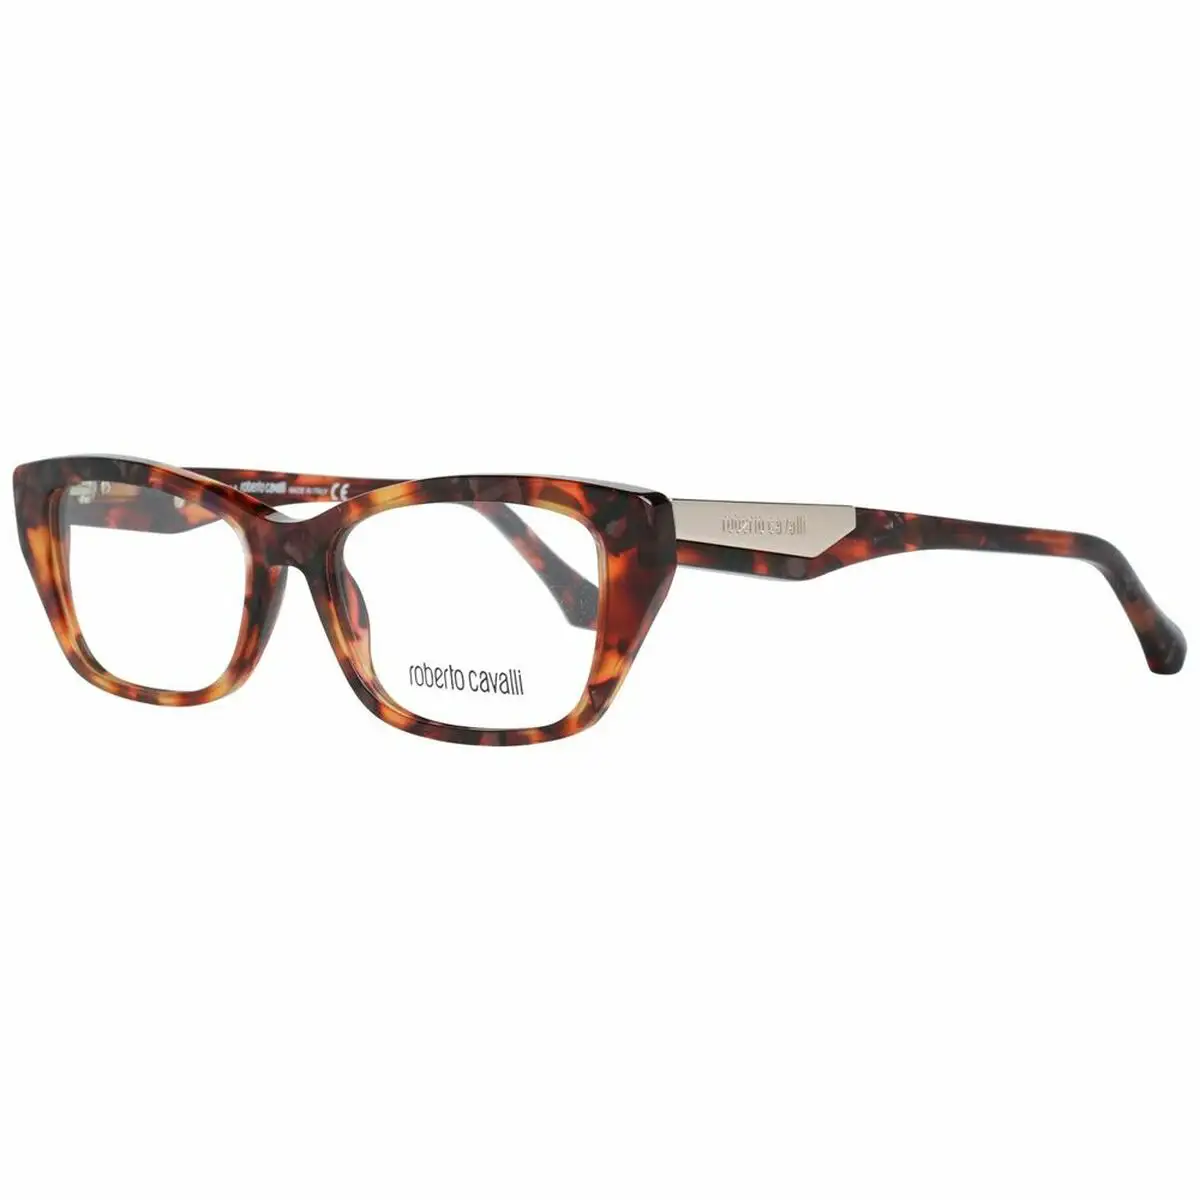 Monture de lunettes femme roberto cavalli rc5082 51054 marron o 51 mm _2162. DIAYTAR SENEGAL - Où Choisir Devient un Plaisir. Découvrez notre boutique en ligne et choisissez parmi une variété de produits qui satisferont tous vos besoins.